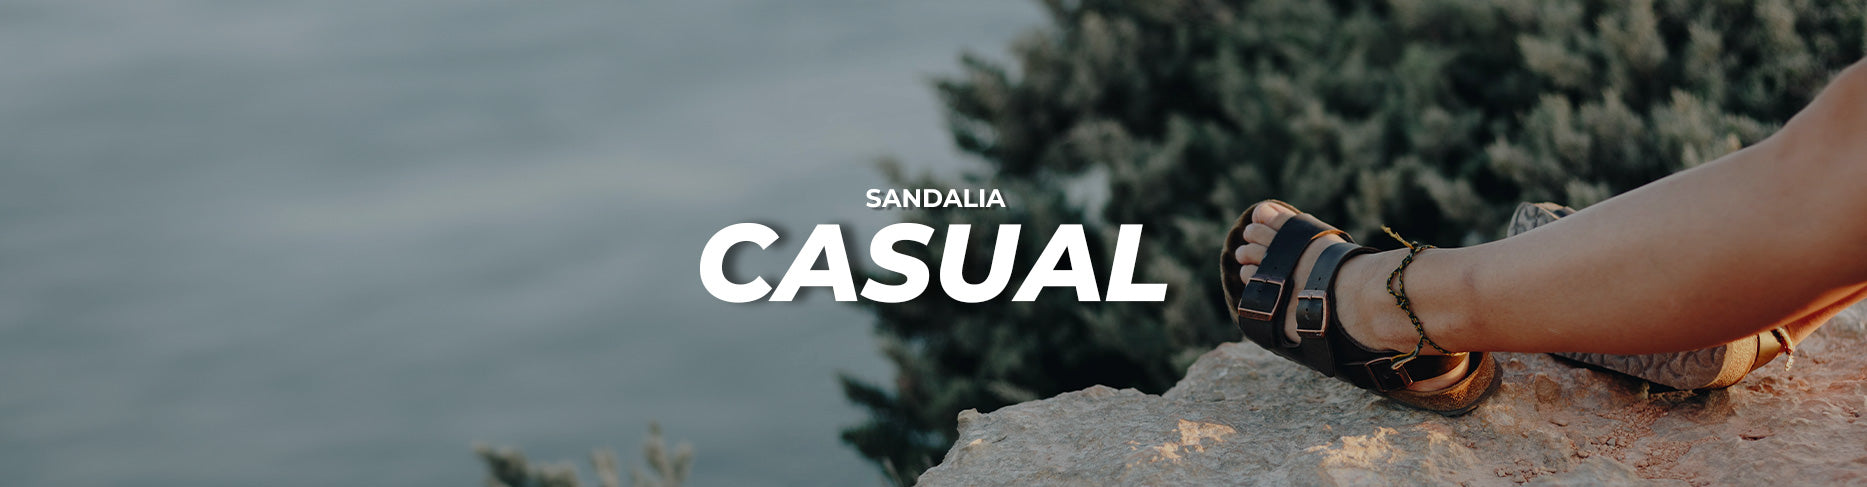 SANDALIA CASUAL